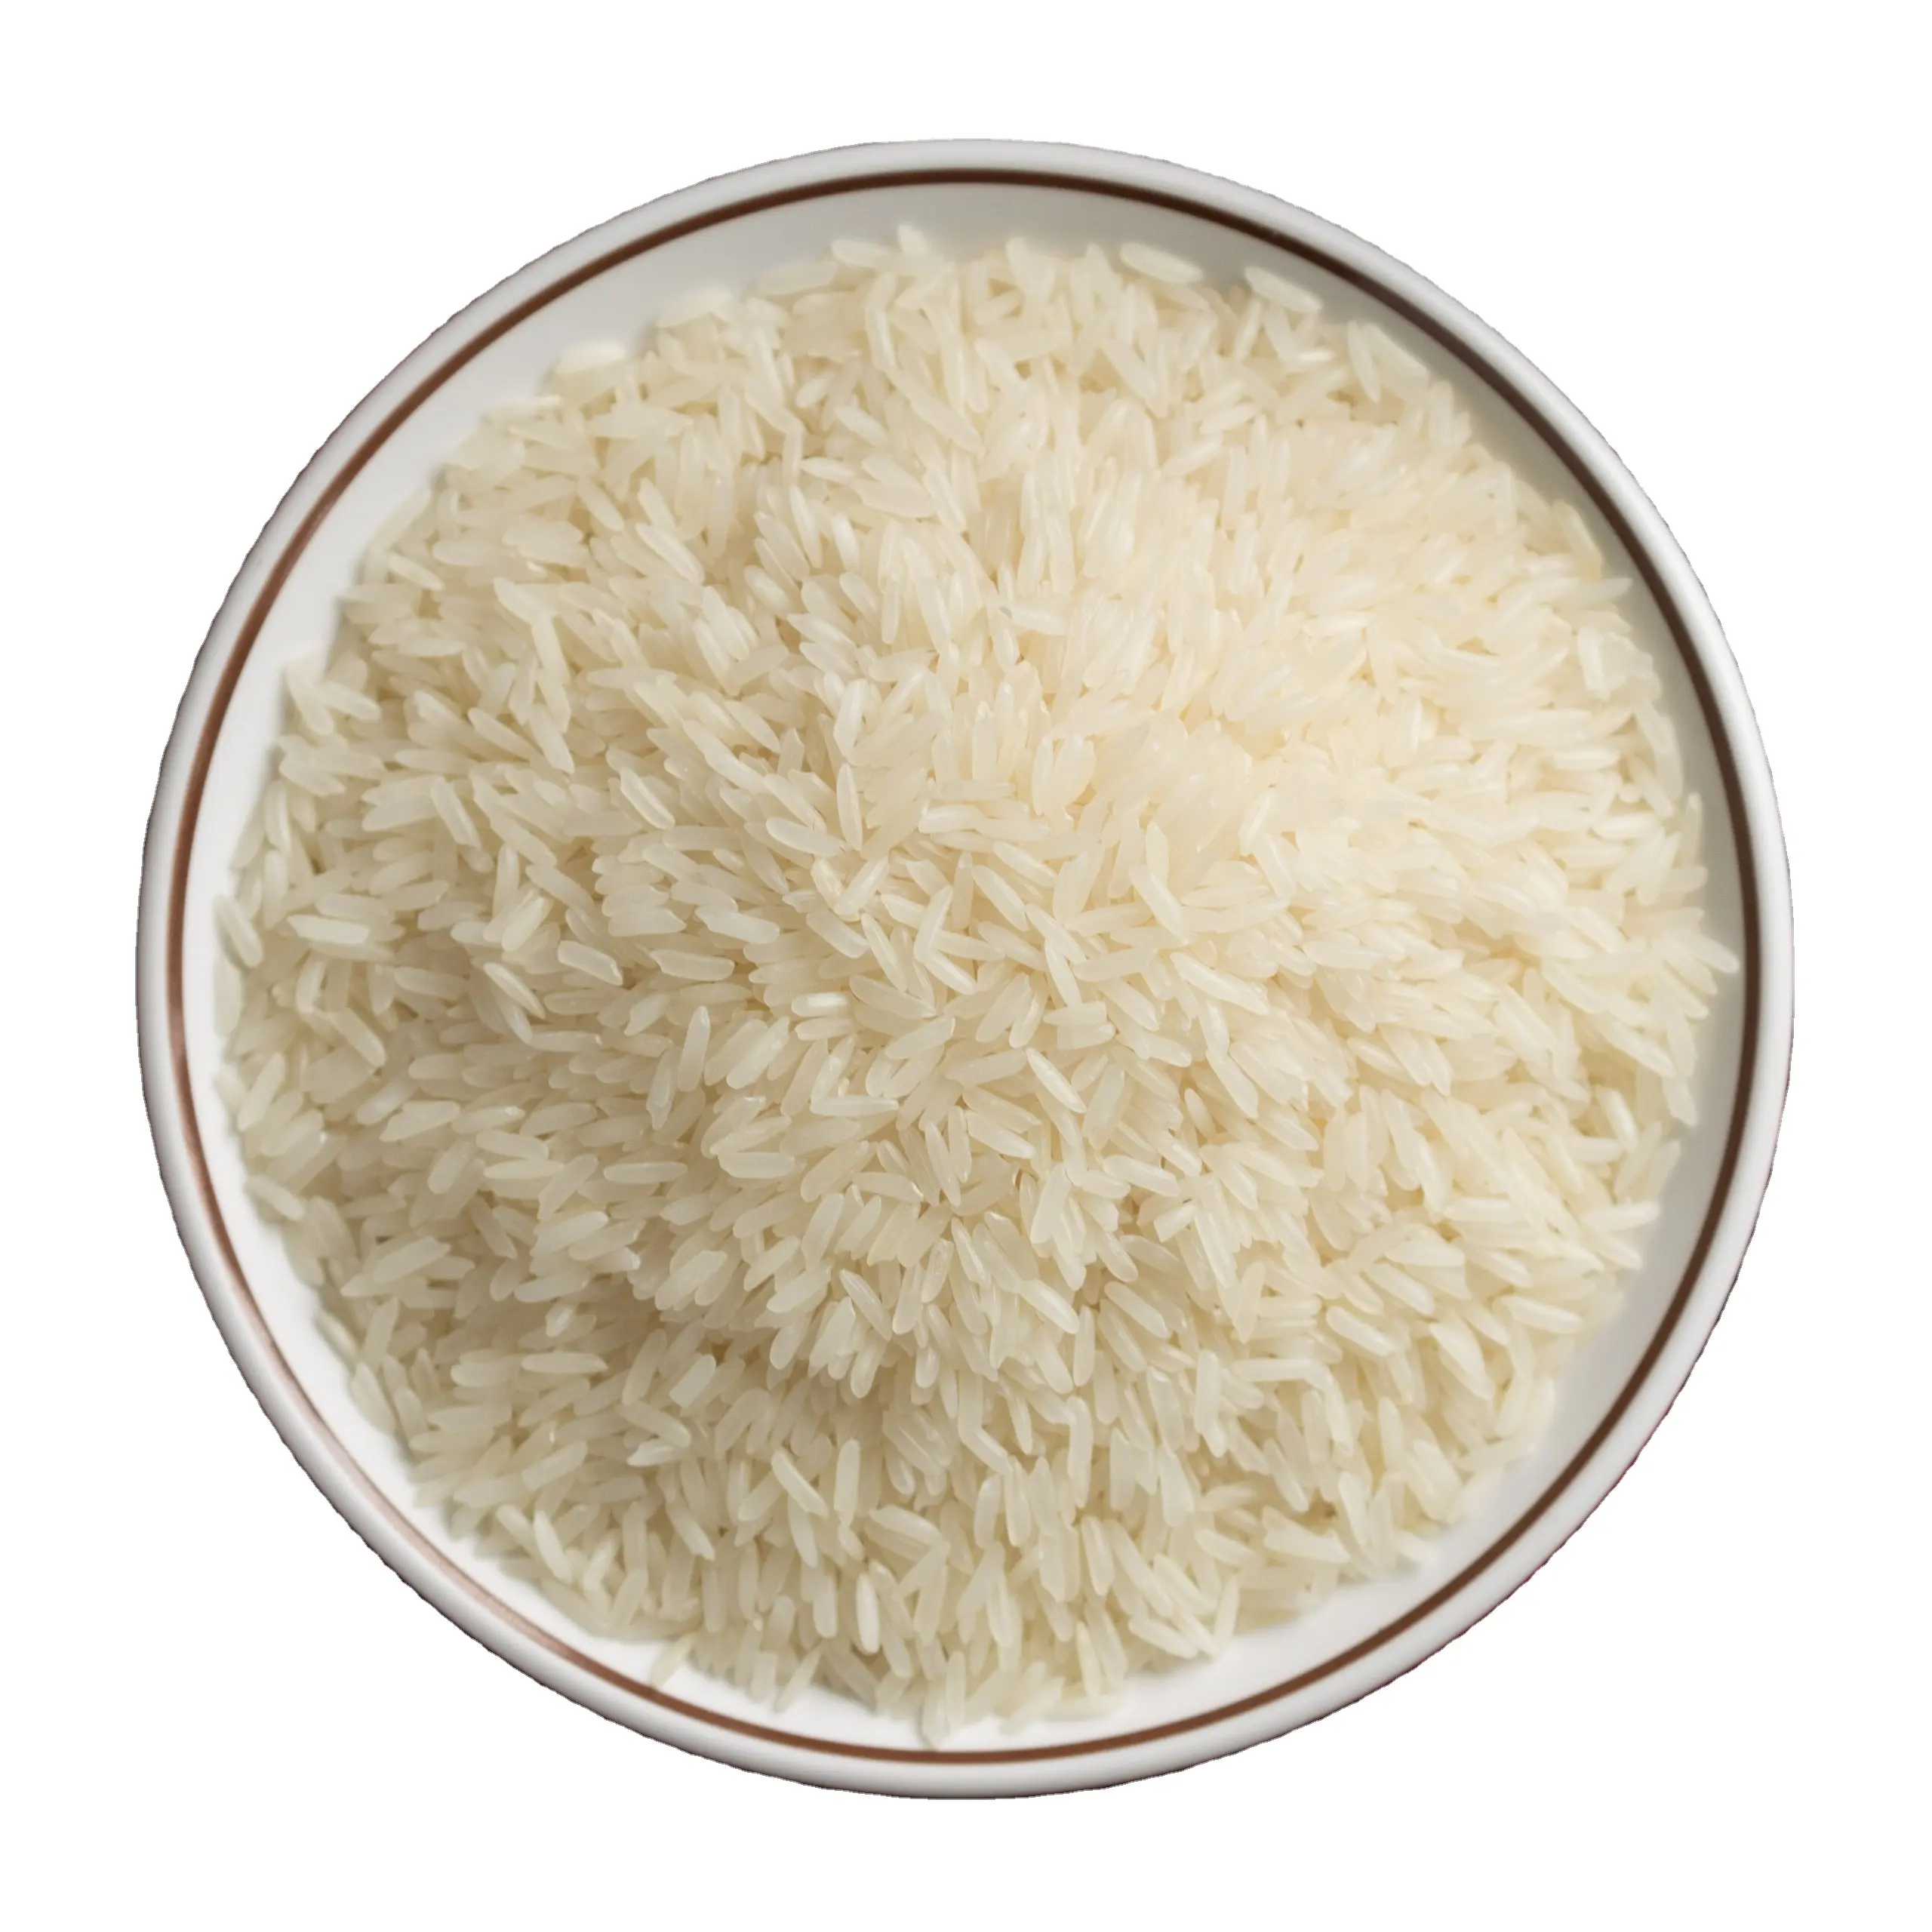 Вьетнам, жасмин, рис, оптовая продажа, конкурентоспособная цена, Меконг, Дельта-100% рис от вьетнамских поставщиков, оптовая продажа